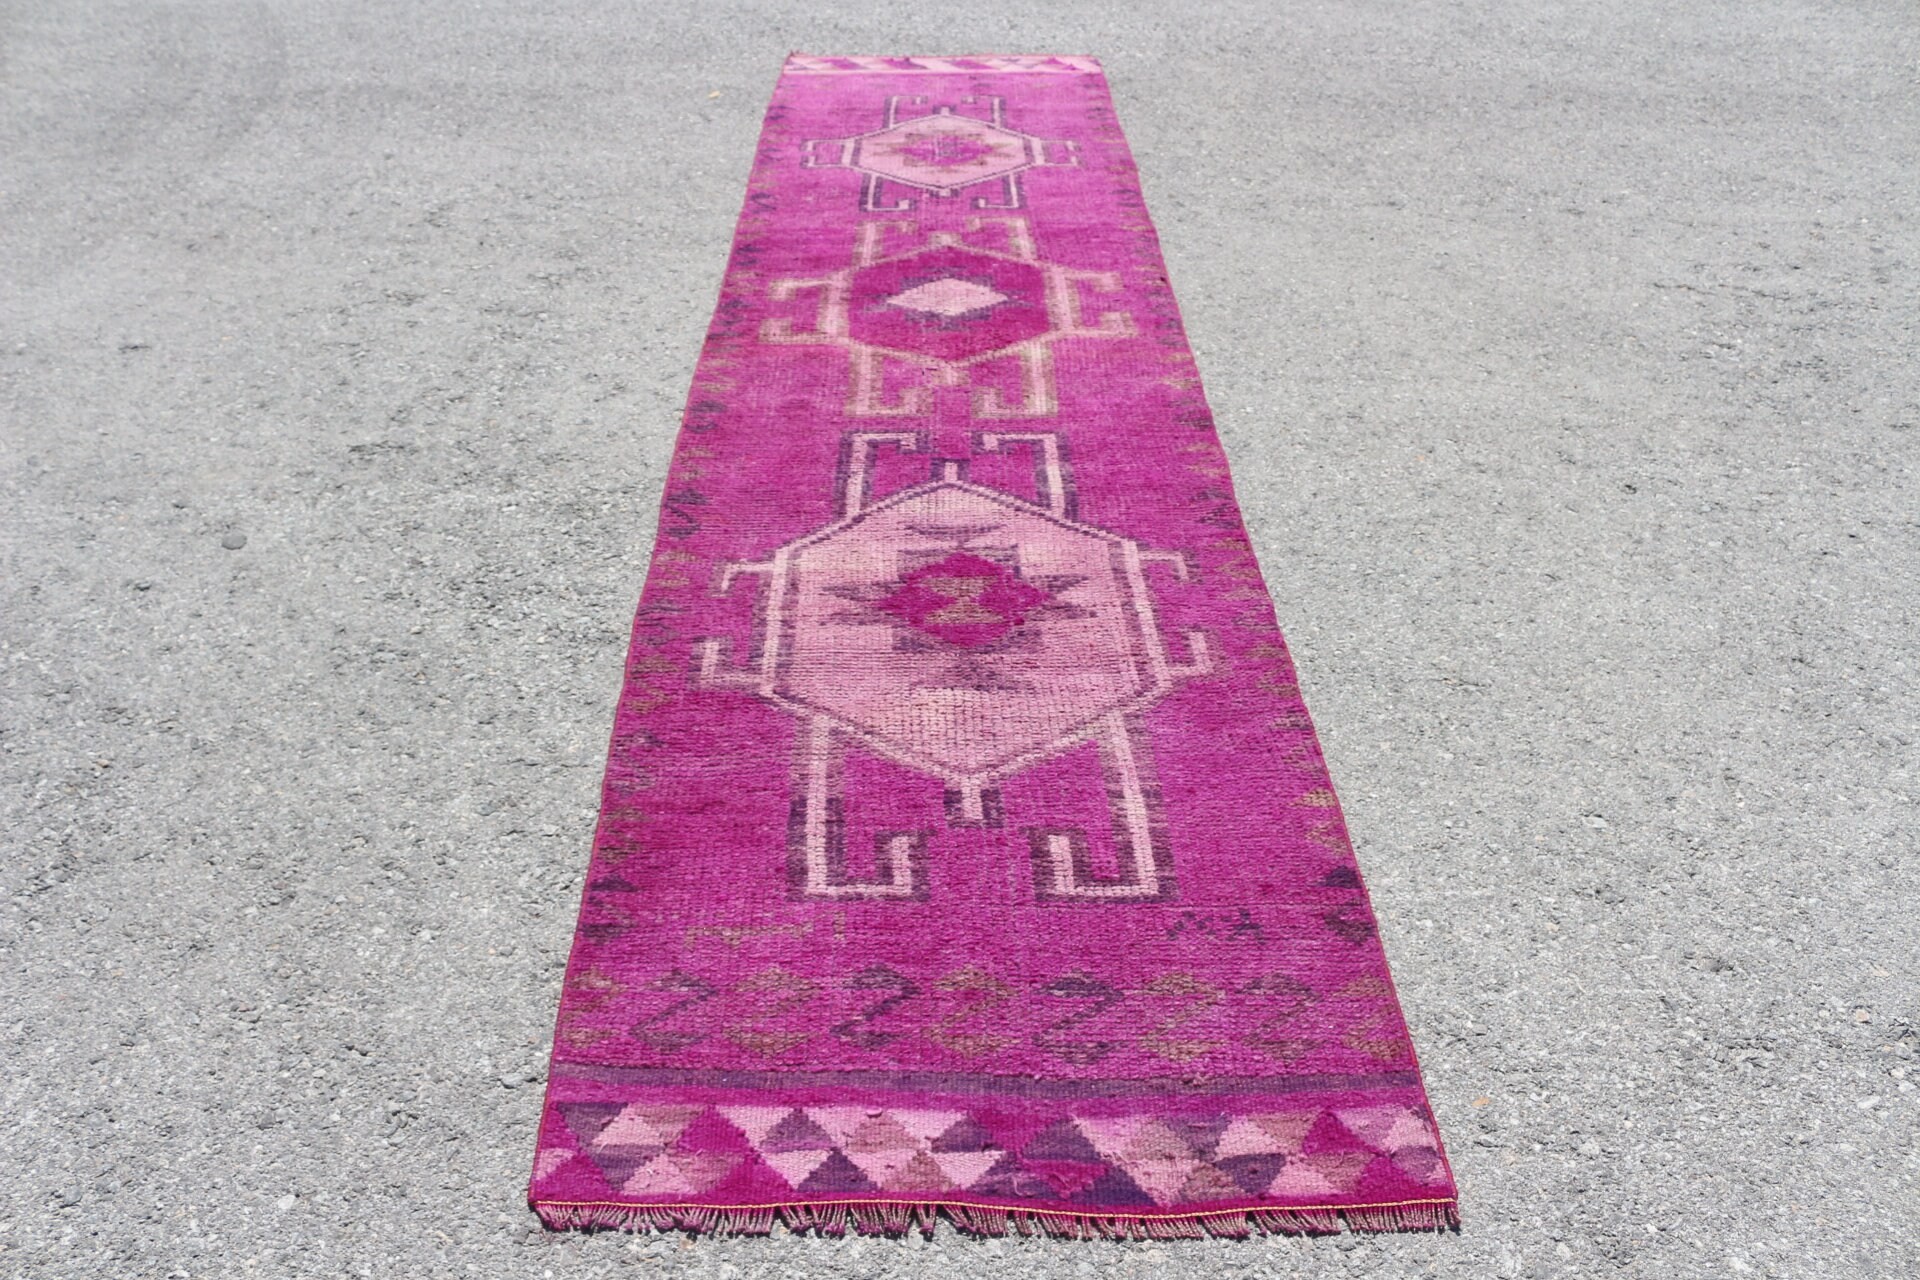 Floor Rug, Pink Moroccan Rugs, Wool Rug, Vintage Rug, 3x12.5 ft Runner Rugs, Stair Rugs, Hallway Rugs, Turkish Rug, Rugs for Kitchen